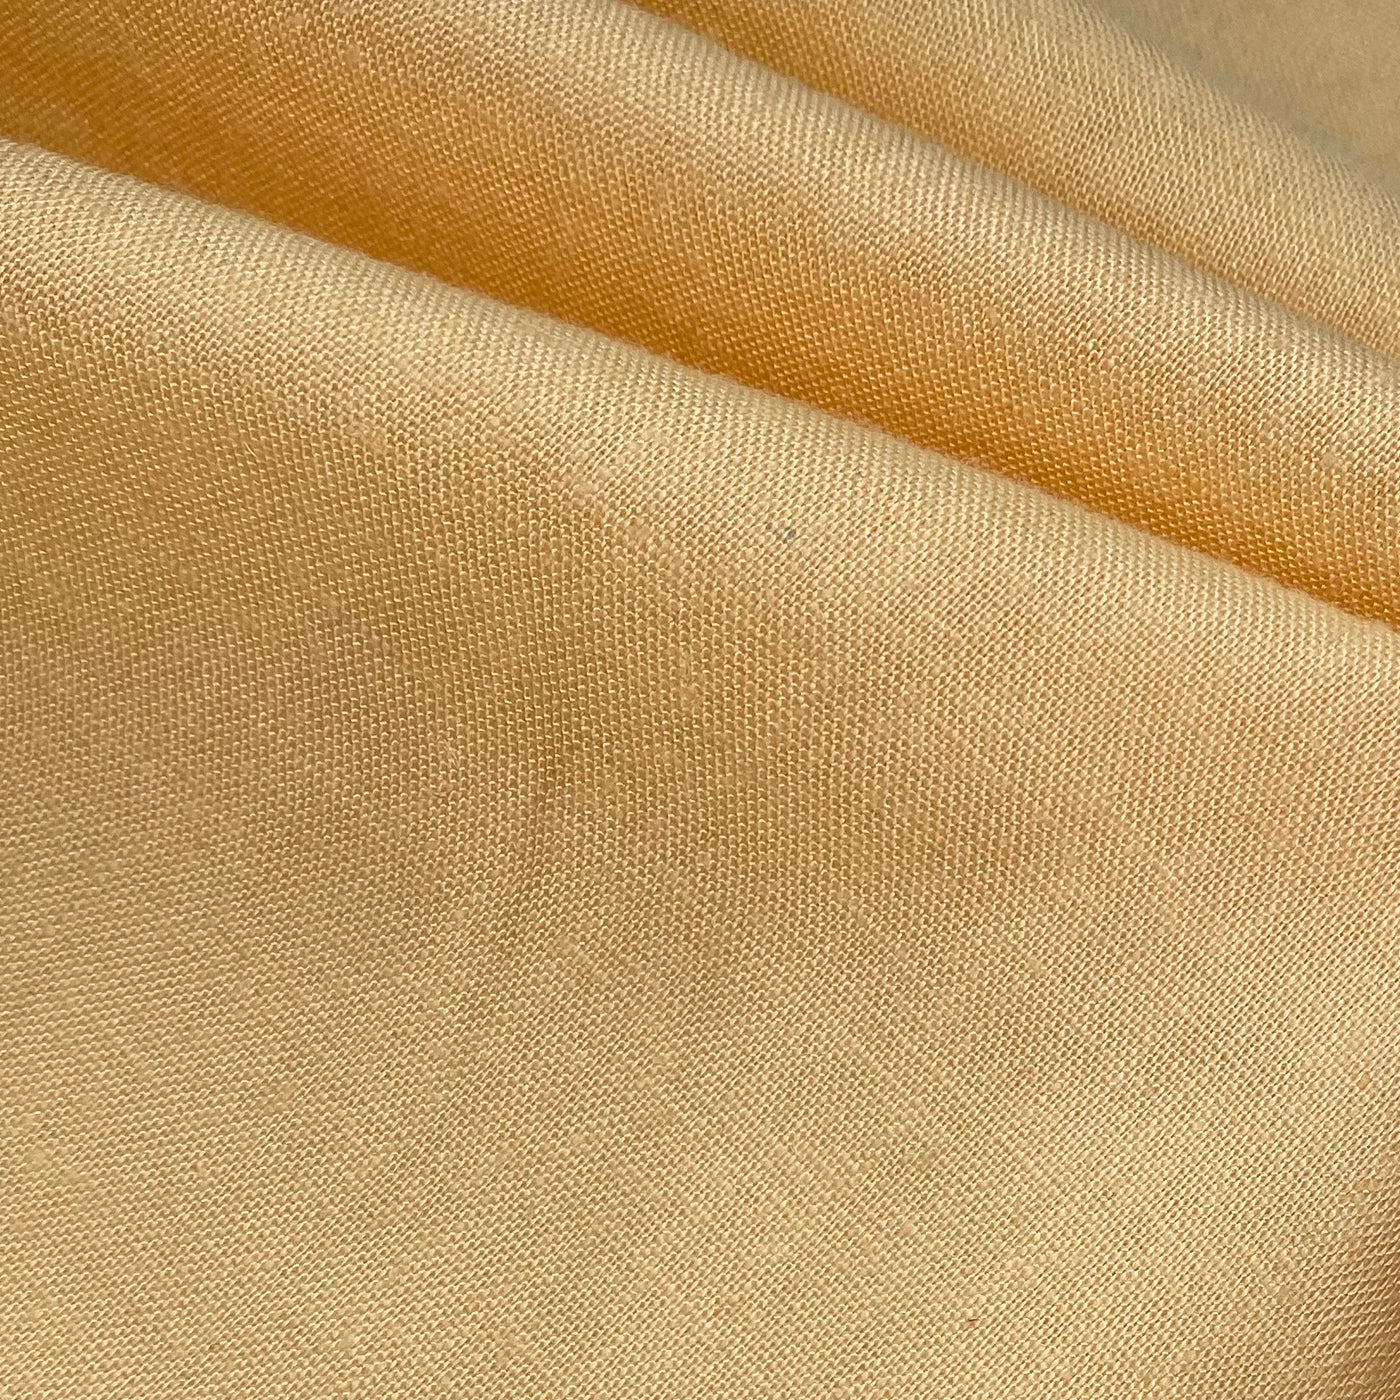 Cotton/Linen Blend - Yellow